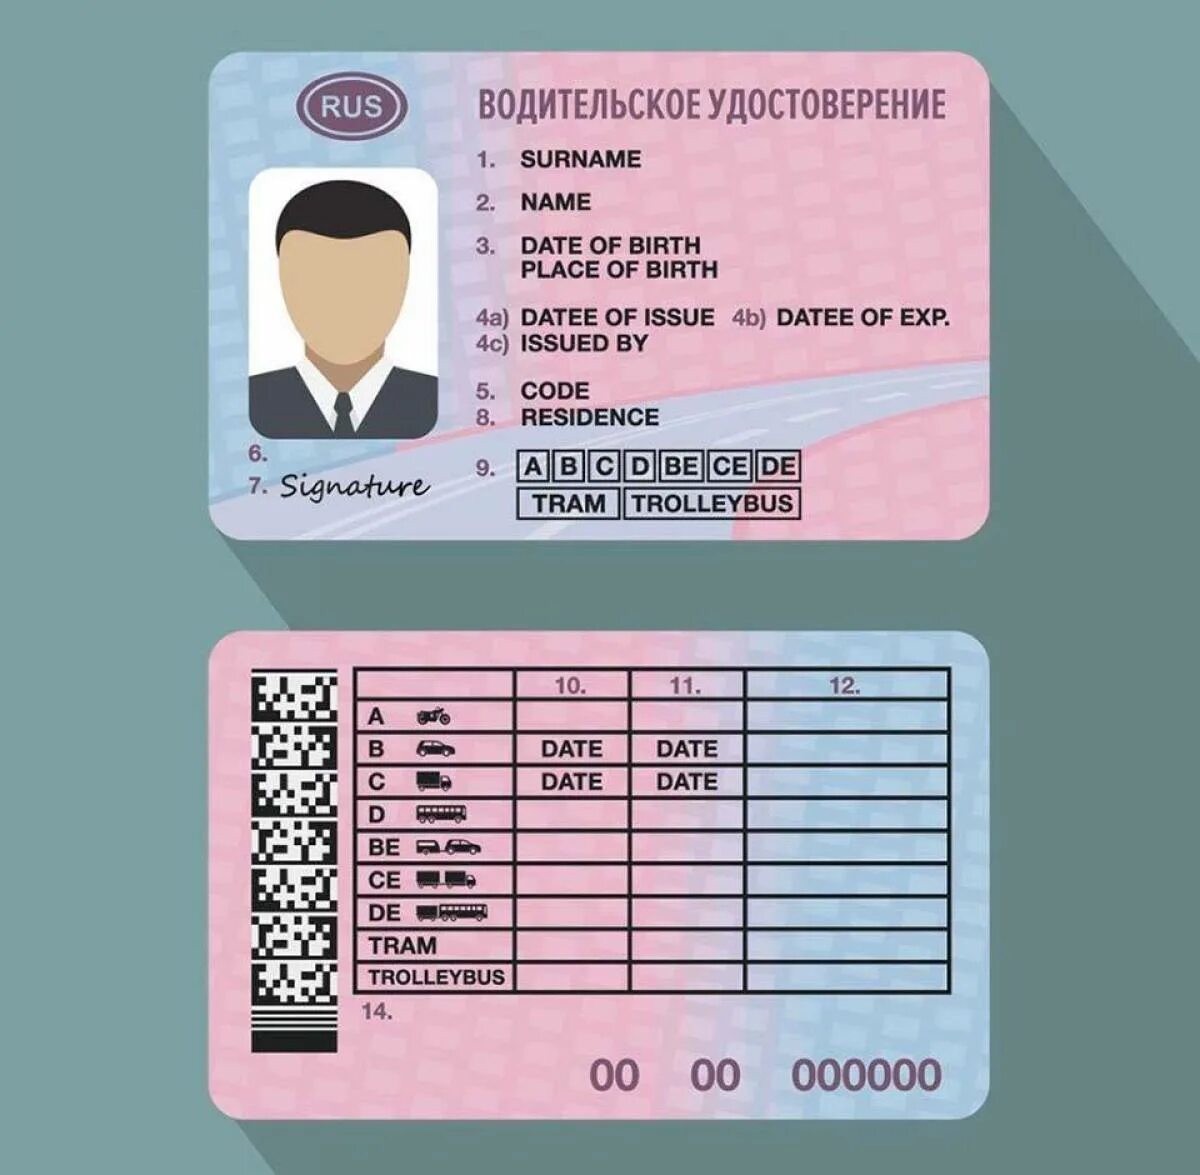 Иностранные национальные водительские удостоверения. Бланки водительского удостоверения.